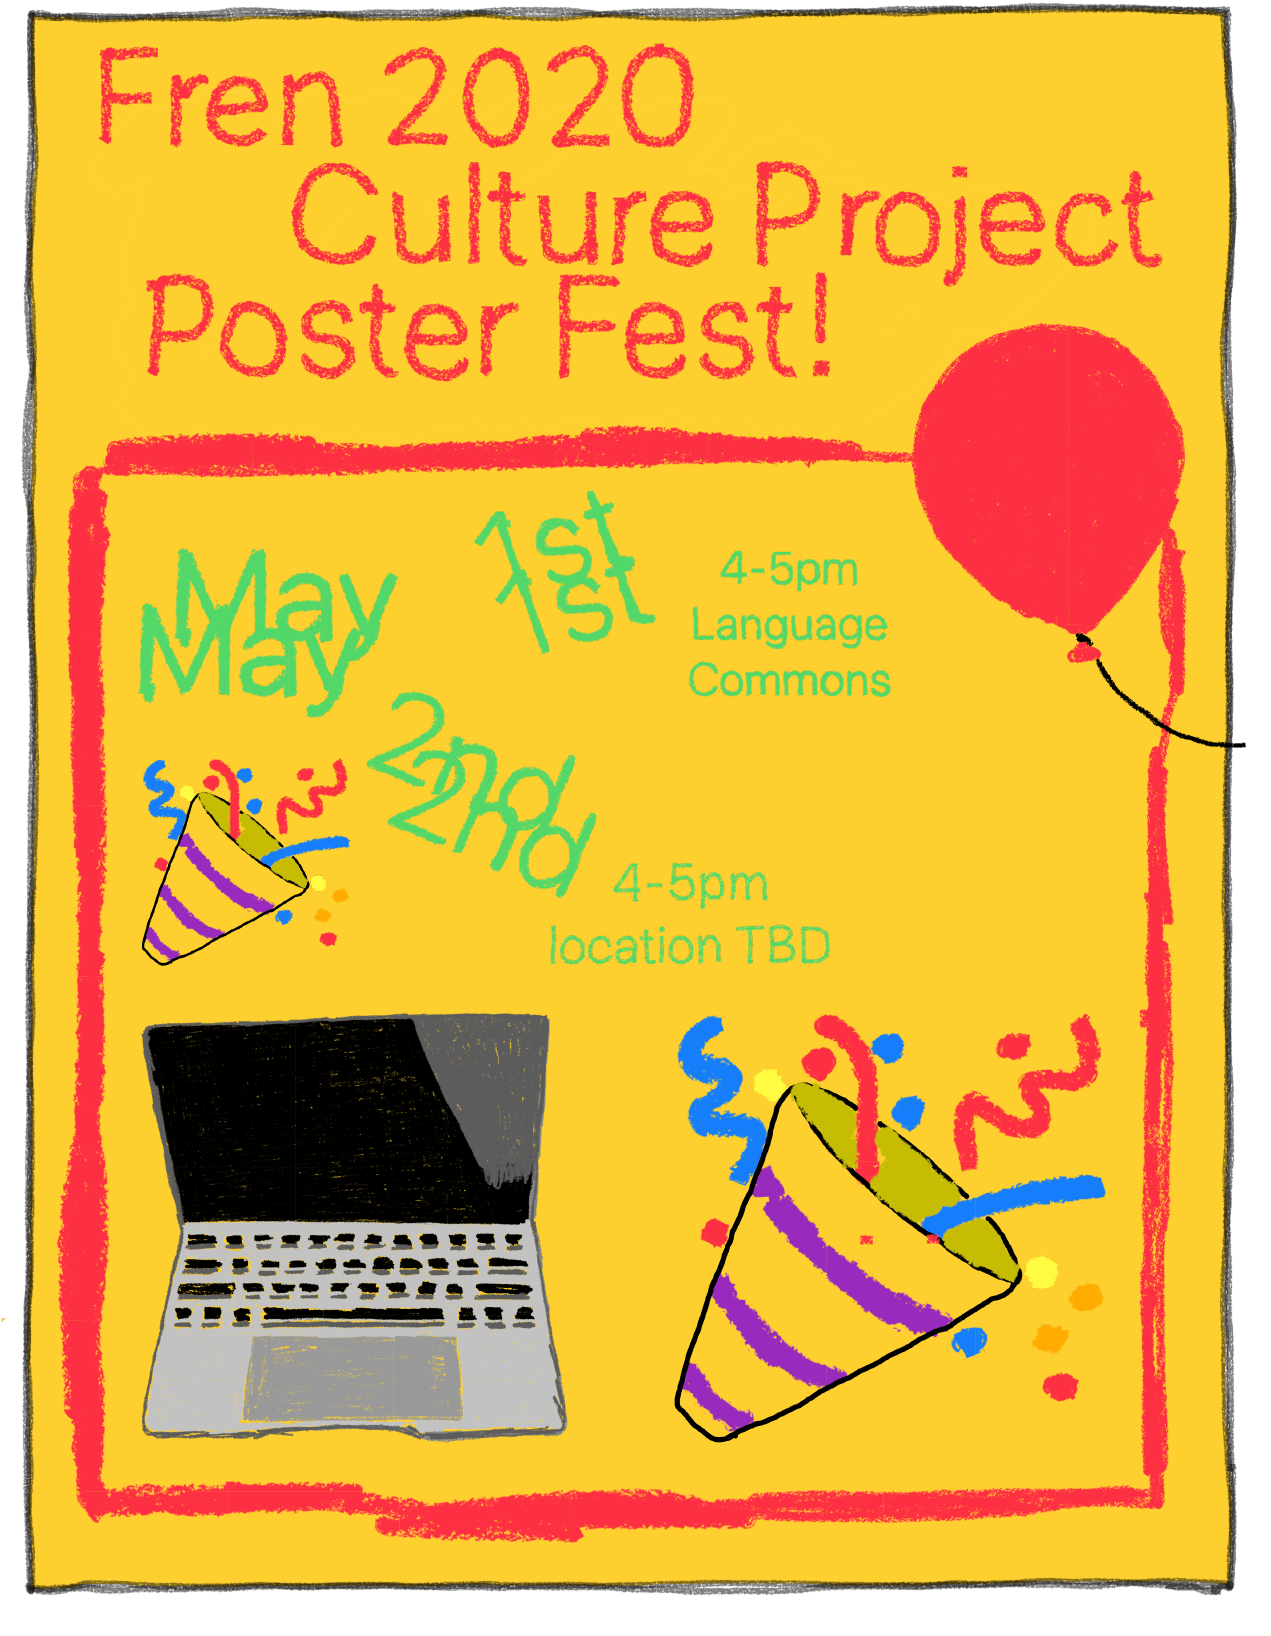 Fren 202 Culture Project Poster Fest flyer